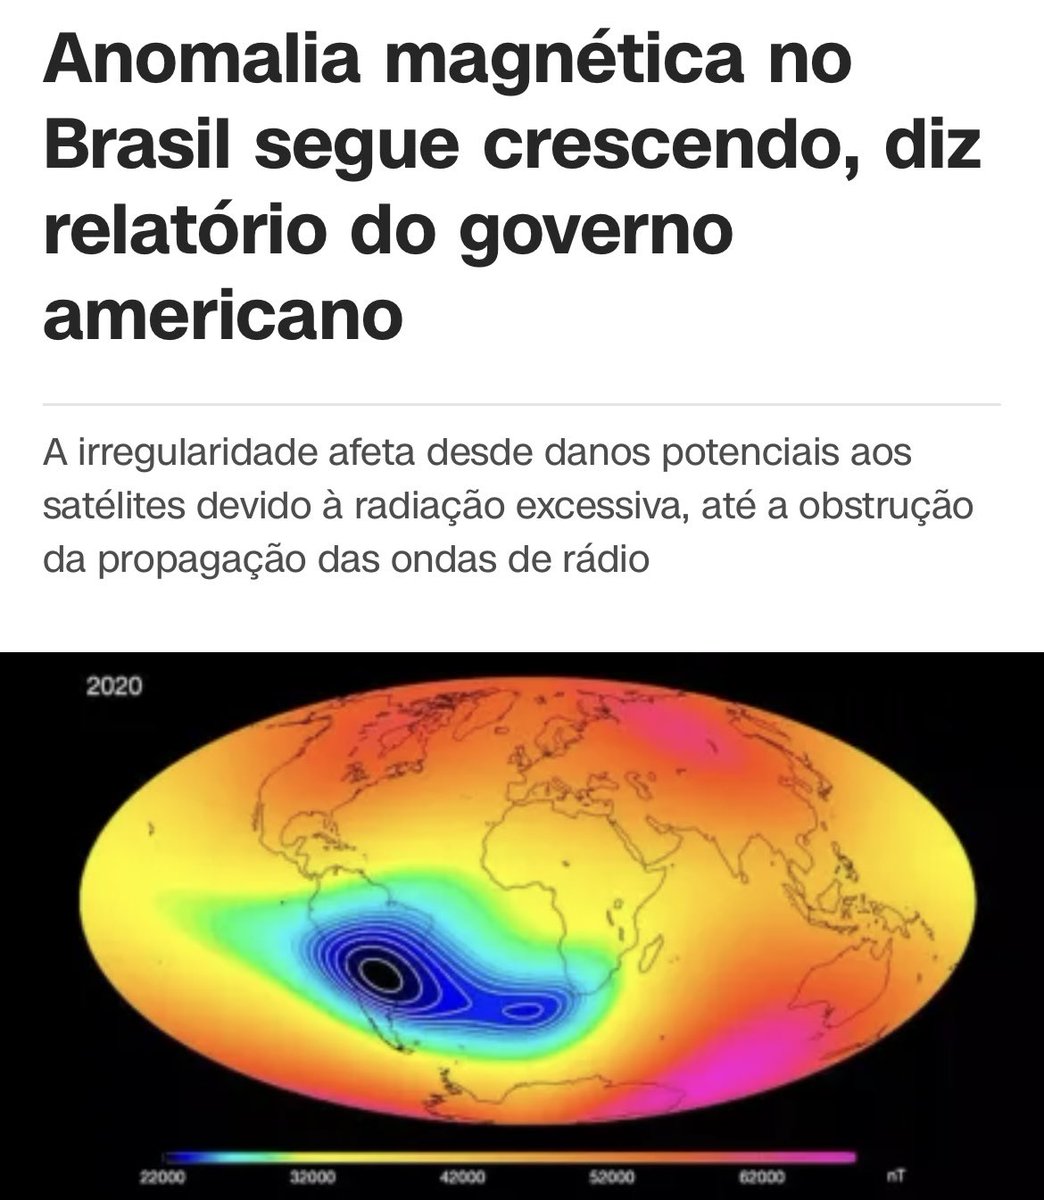 🚨ATENÇÃO: Anomalia magnética no Brasil segue crescendo, diz relatório do governo americano.